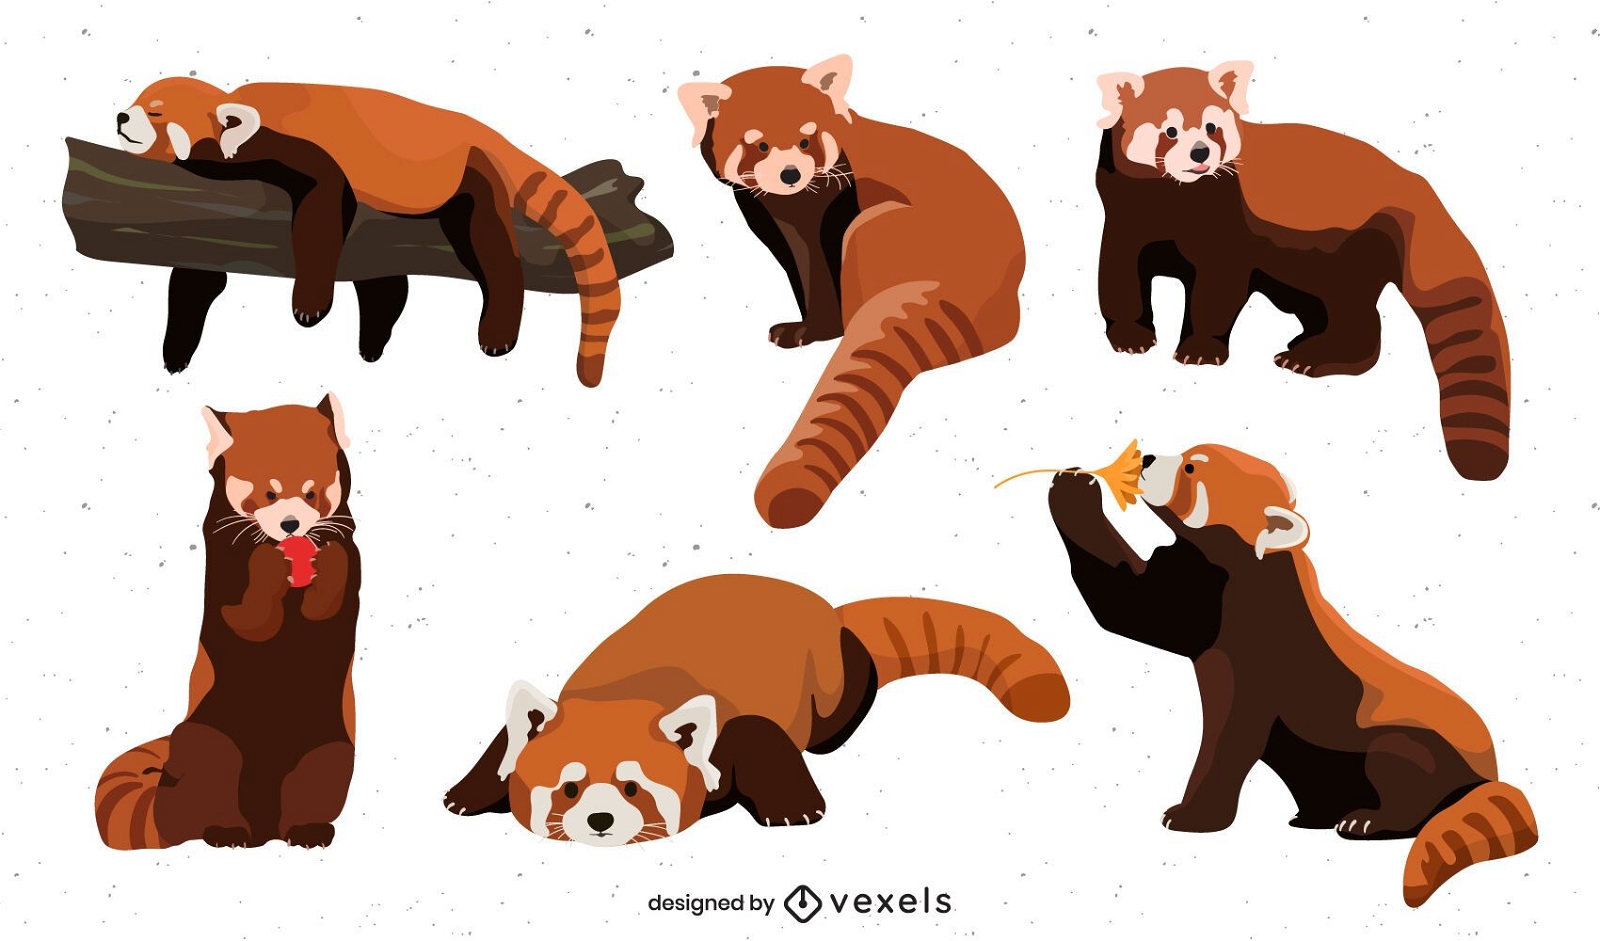 Ilustração fofa do panda e do amigo do panda vermelho, Gráficos - Envato  Elements